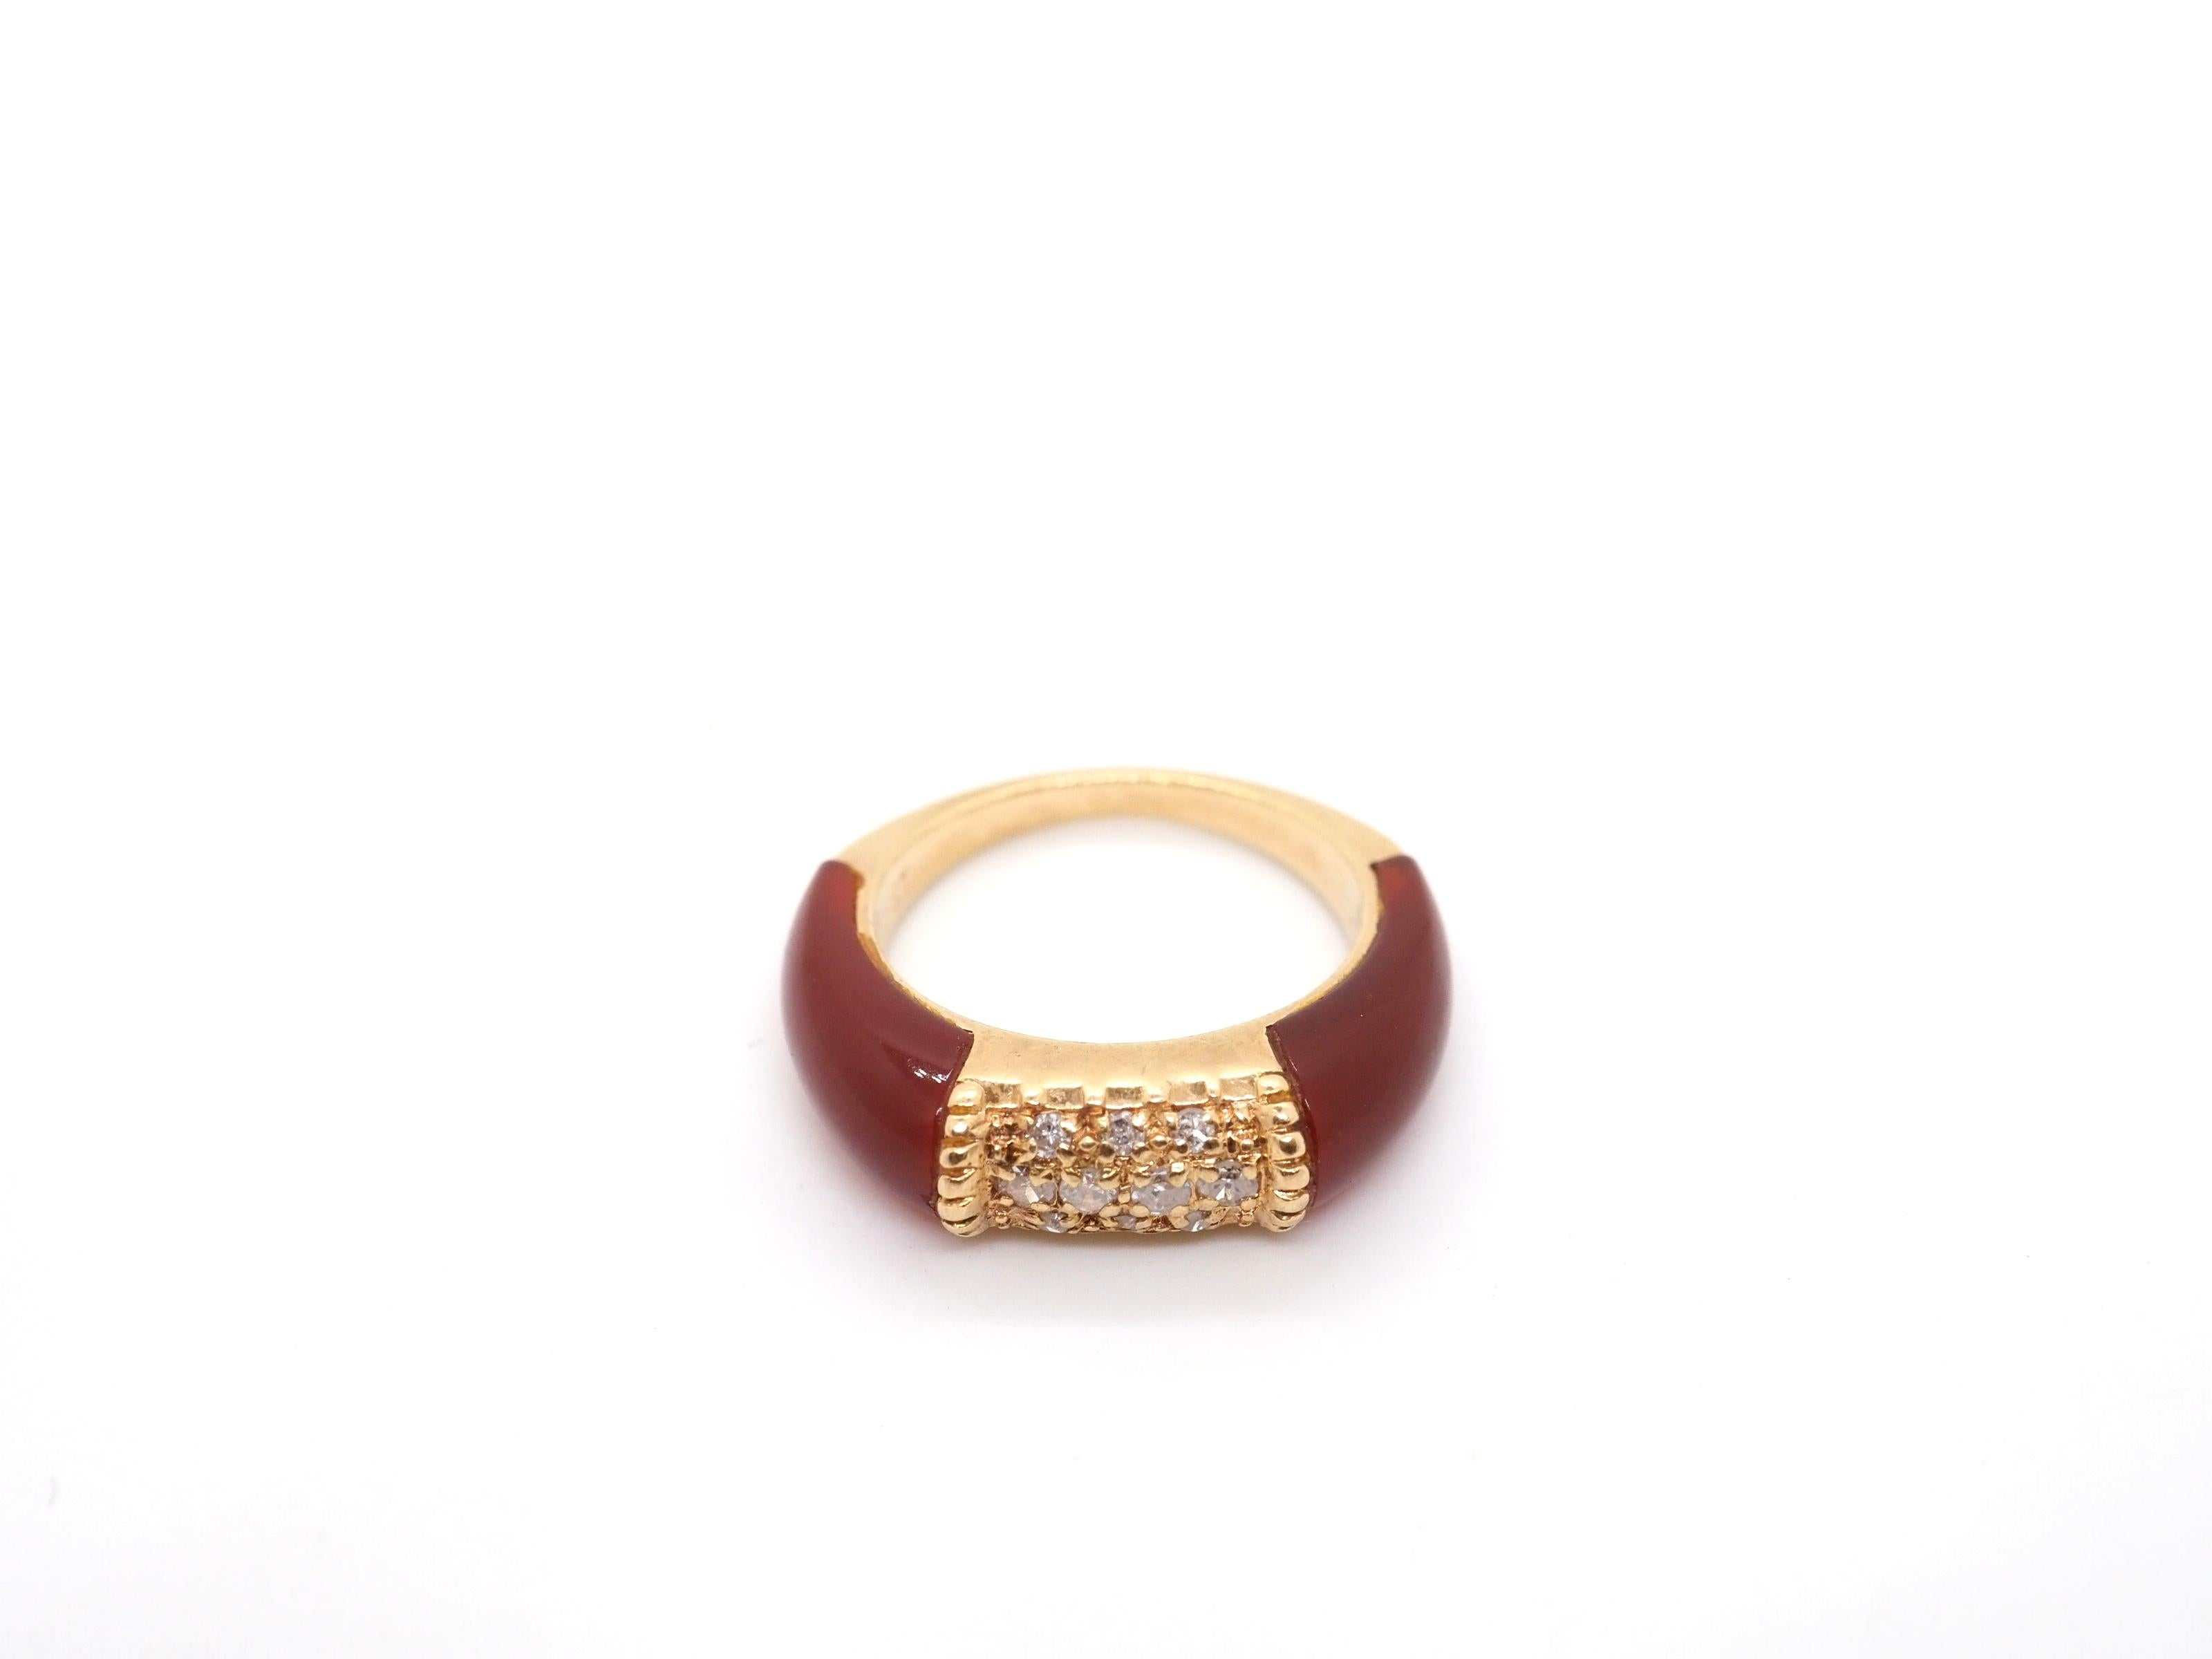 Tauchen Sie ein in die Welt der Vintage-Eleganz mit diesem exquisiten Vintage-Ring aus 14 Karat Gelbgold. Dieses atemberaubende Stück fängt die Essenz einer vergangenen Ära ein und besticht durch aufwändige Details und ein zeitloses Design.

Die vom